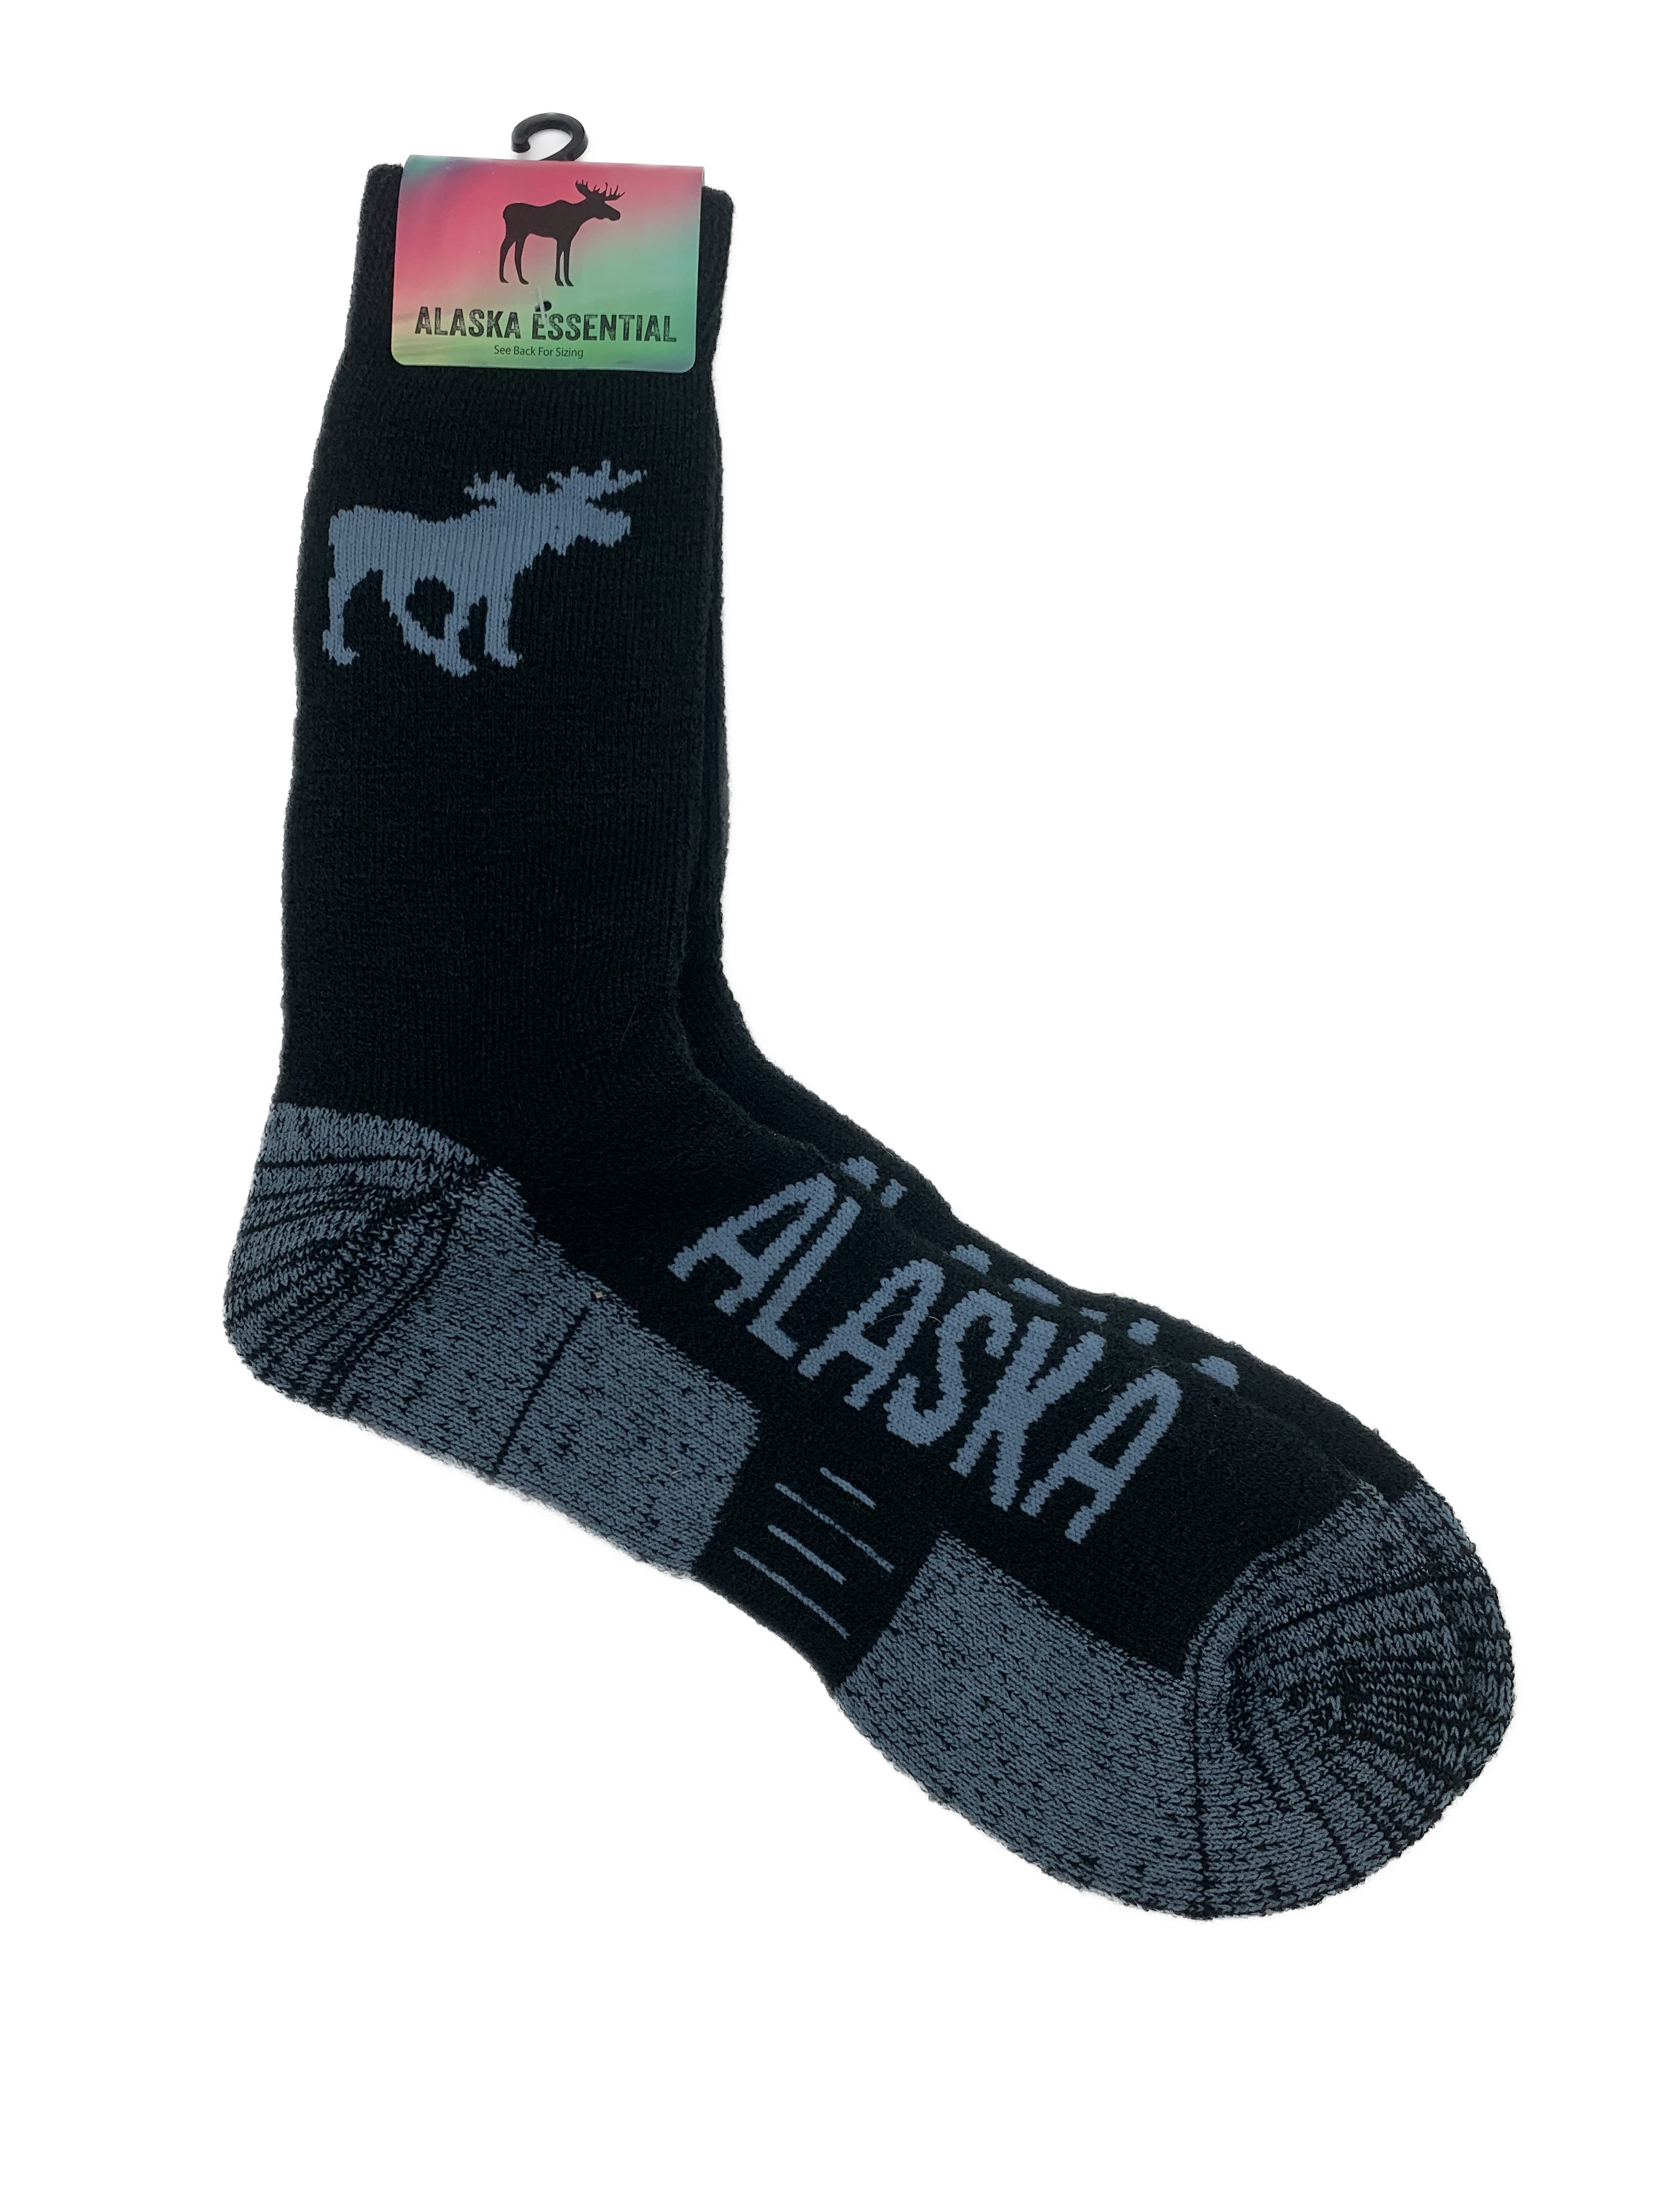 Moose Alaska Summit Merino Wool Blend Socks